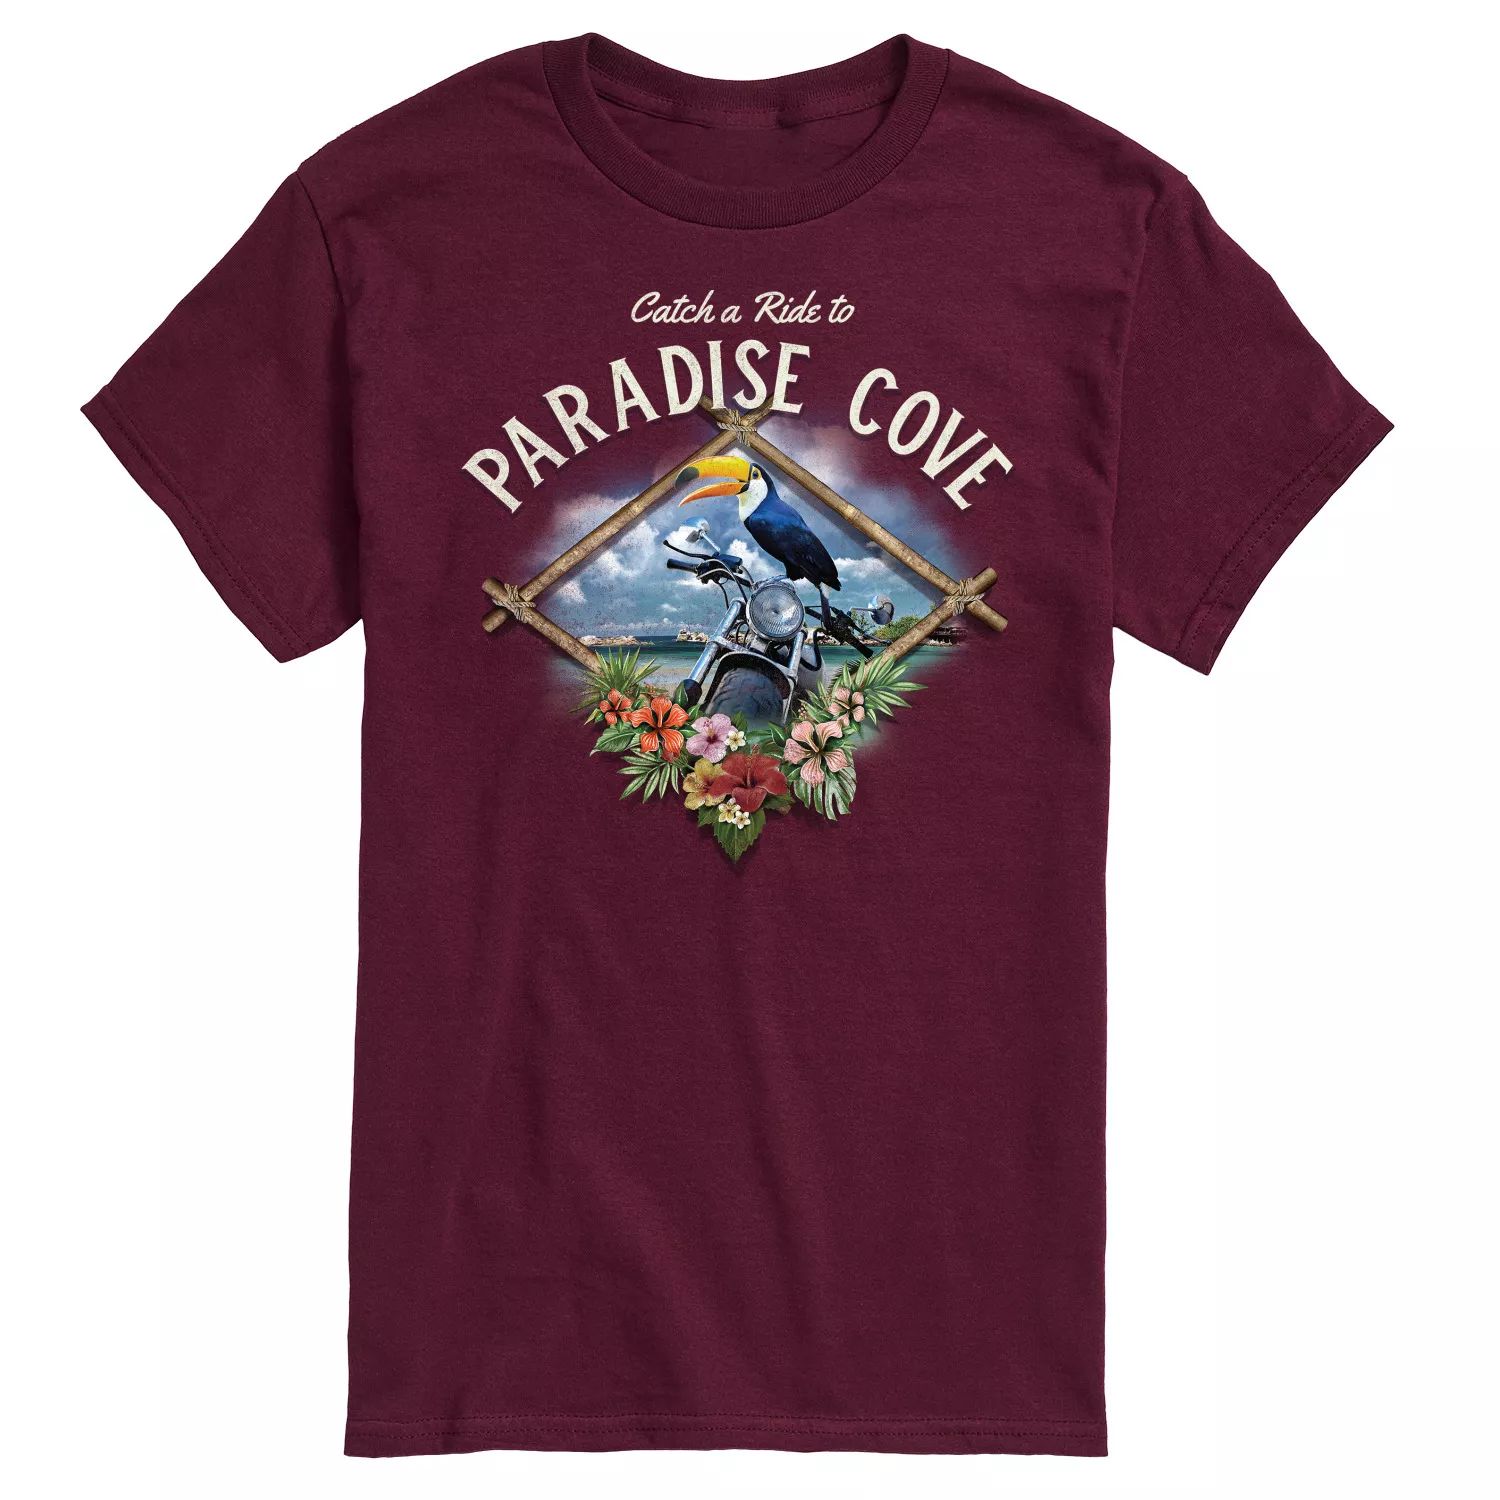 Мужская футболка с открыткой Paradise Cove Licensed Character paradise cove hotel